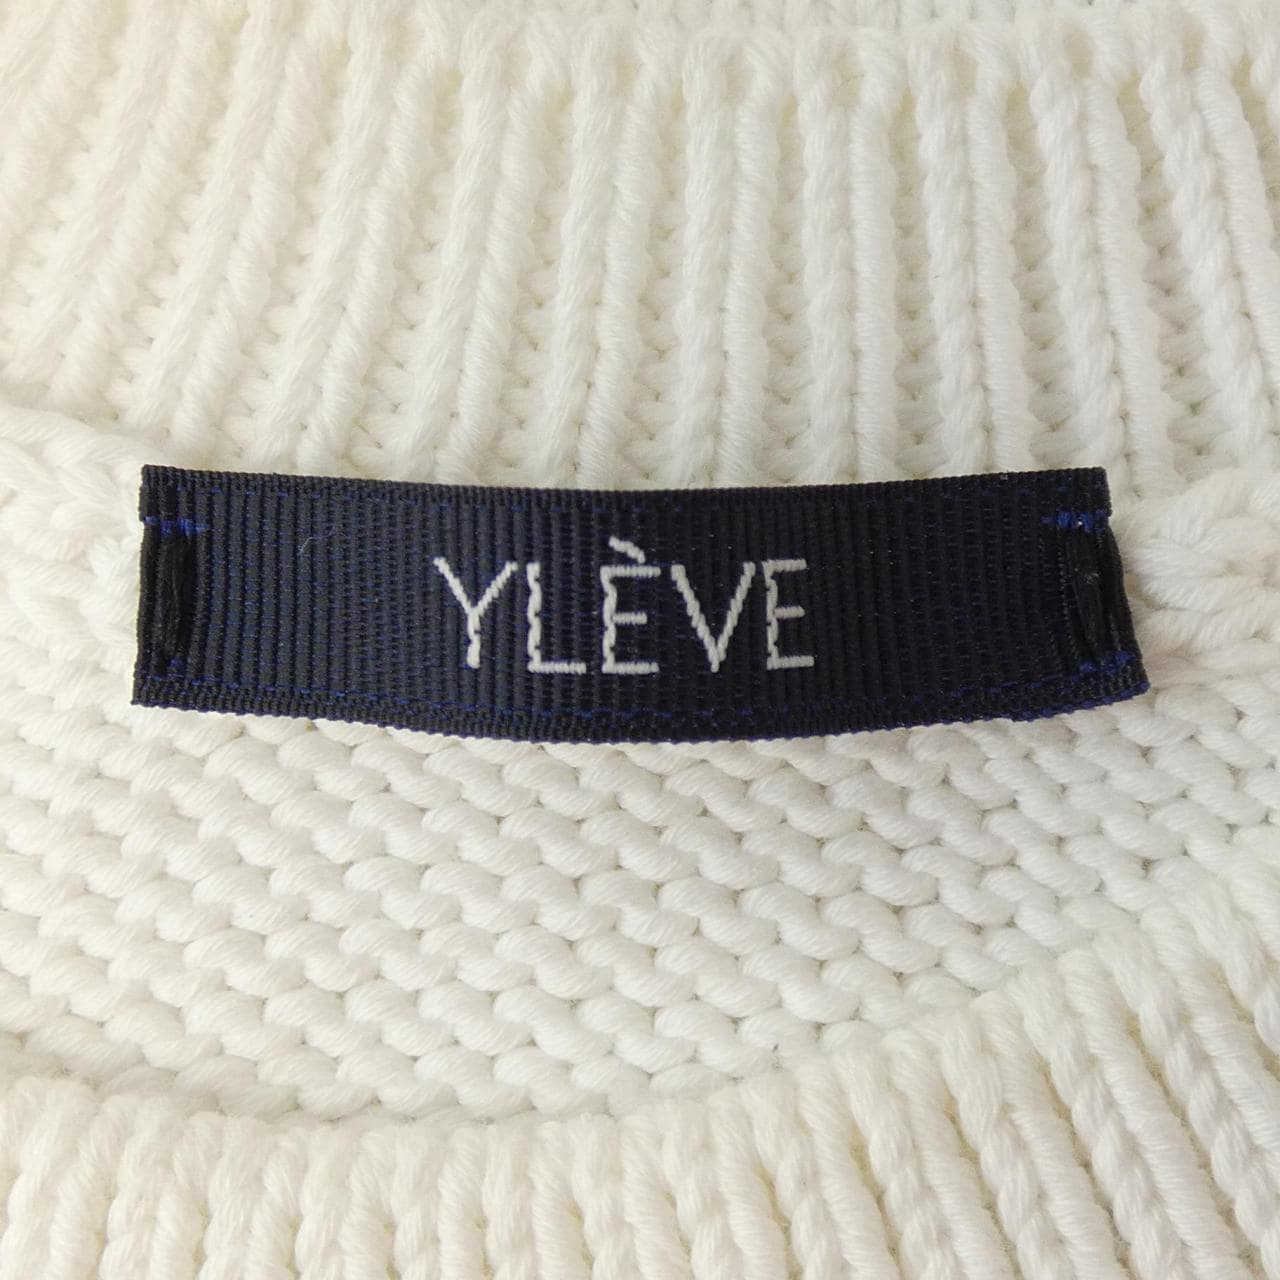 YLEVE knit